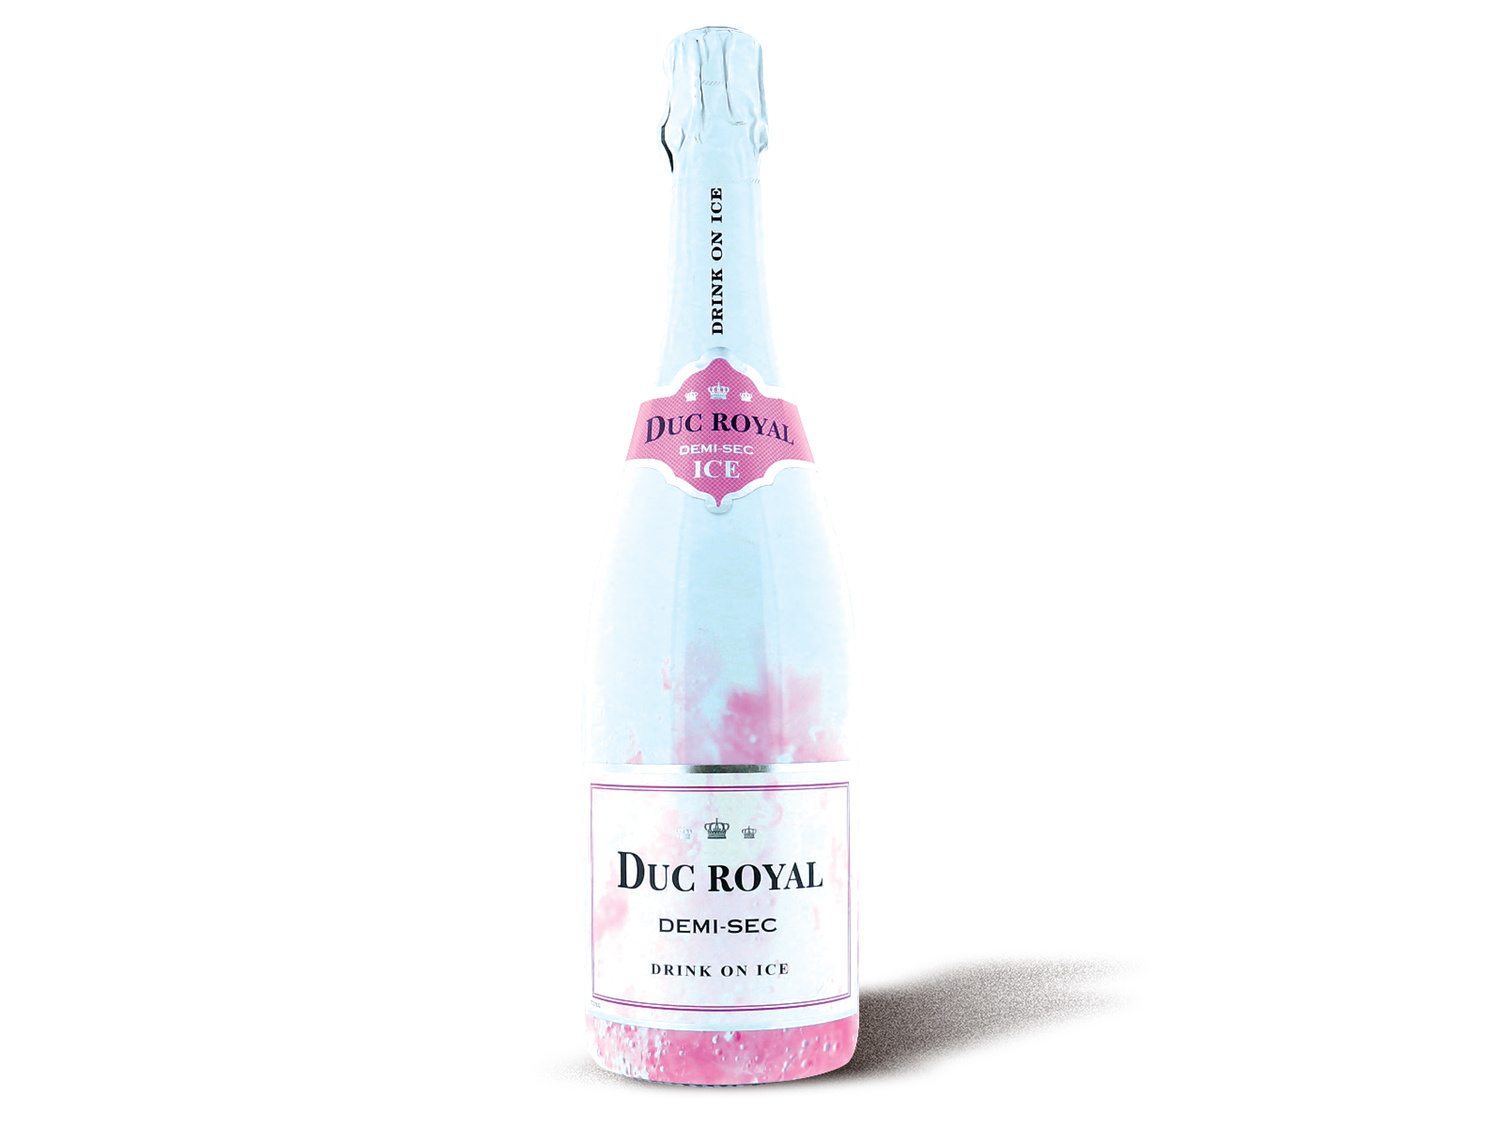 Duc royal vin mousseux1 , le prix 3.89 &#8364; 
- Au choix : demi-sec ice blanc ...